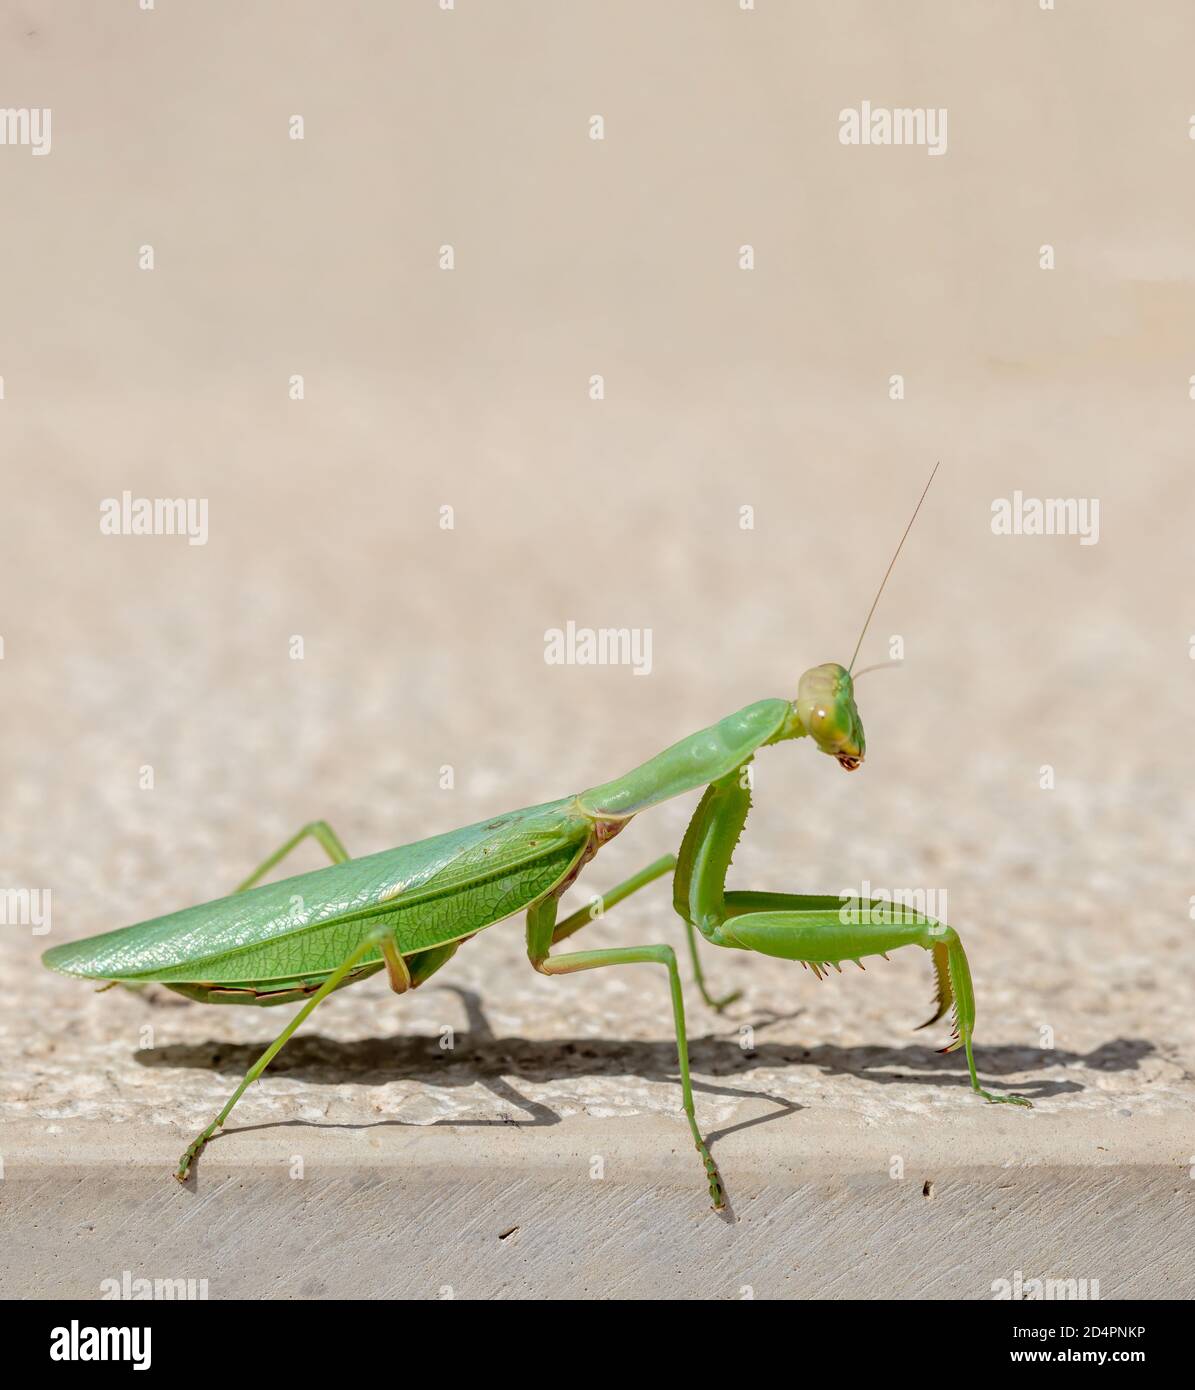 Mantide verde, mantidae su sfondo di colore beige. La mantis di preghiera femminile è un insetto che mangia il maschio durante l'accoppiamento. CopySpace, closeu verticale Foto Stock